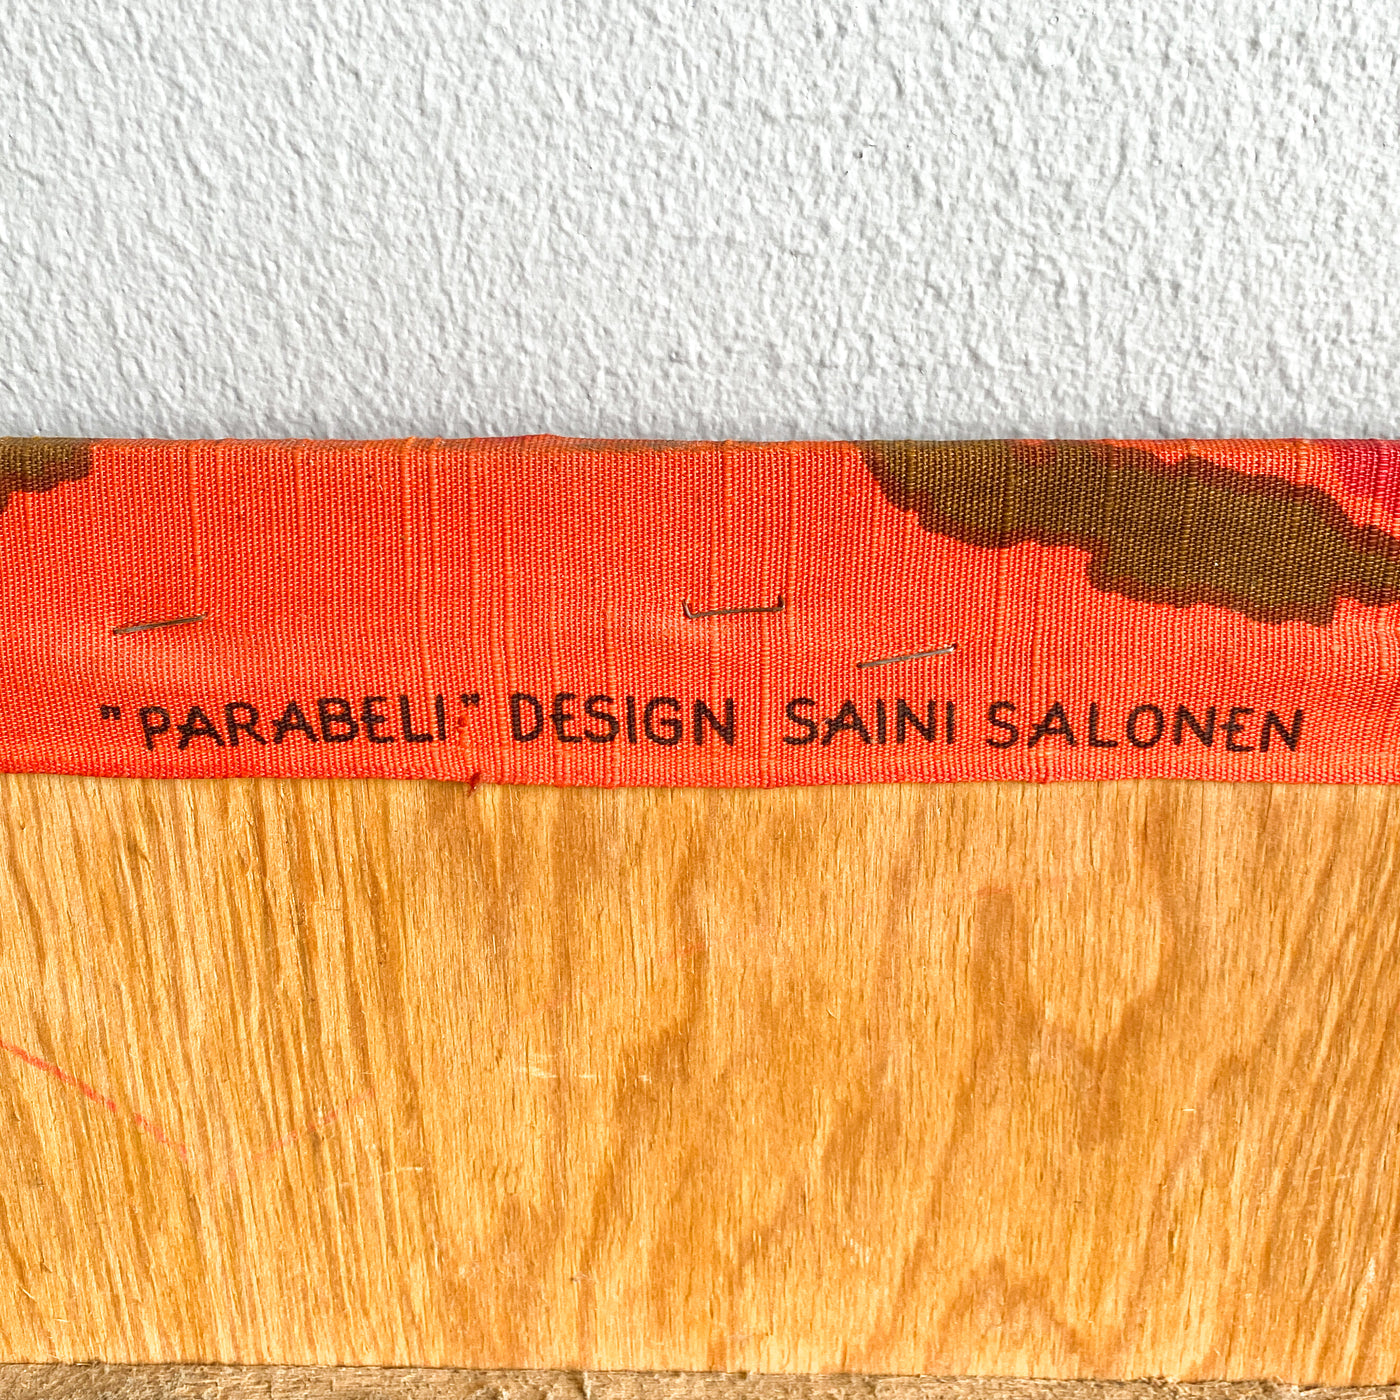 Väggbonad Parabeli - Saini Salonen, Borås Cotton